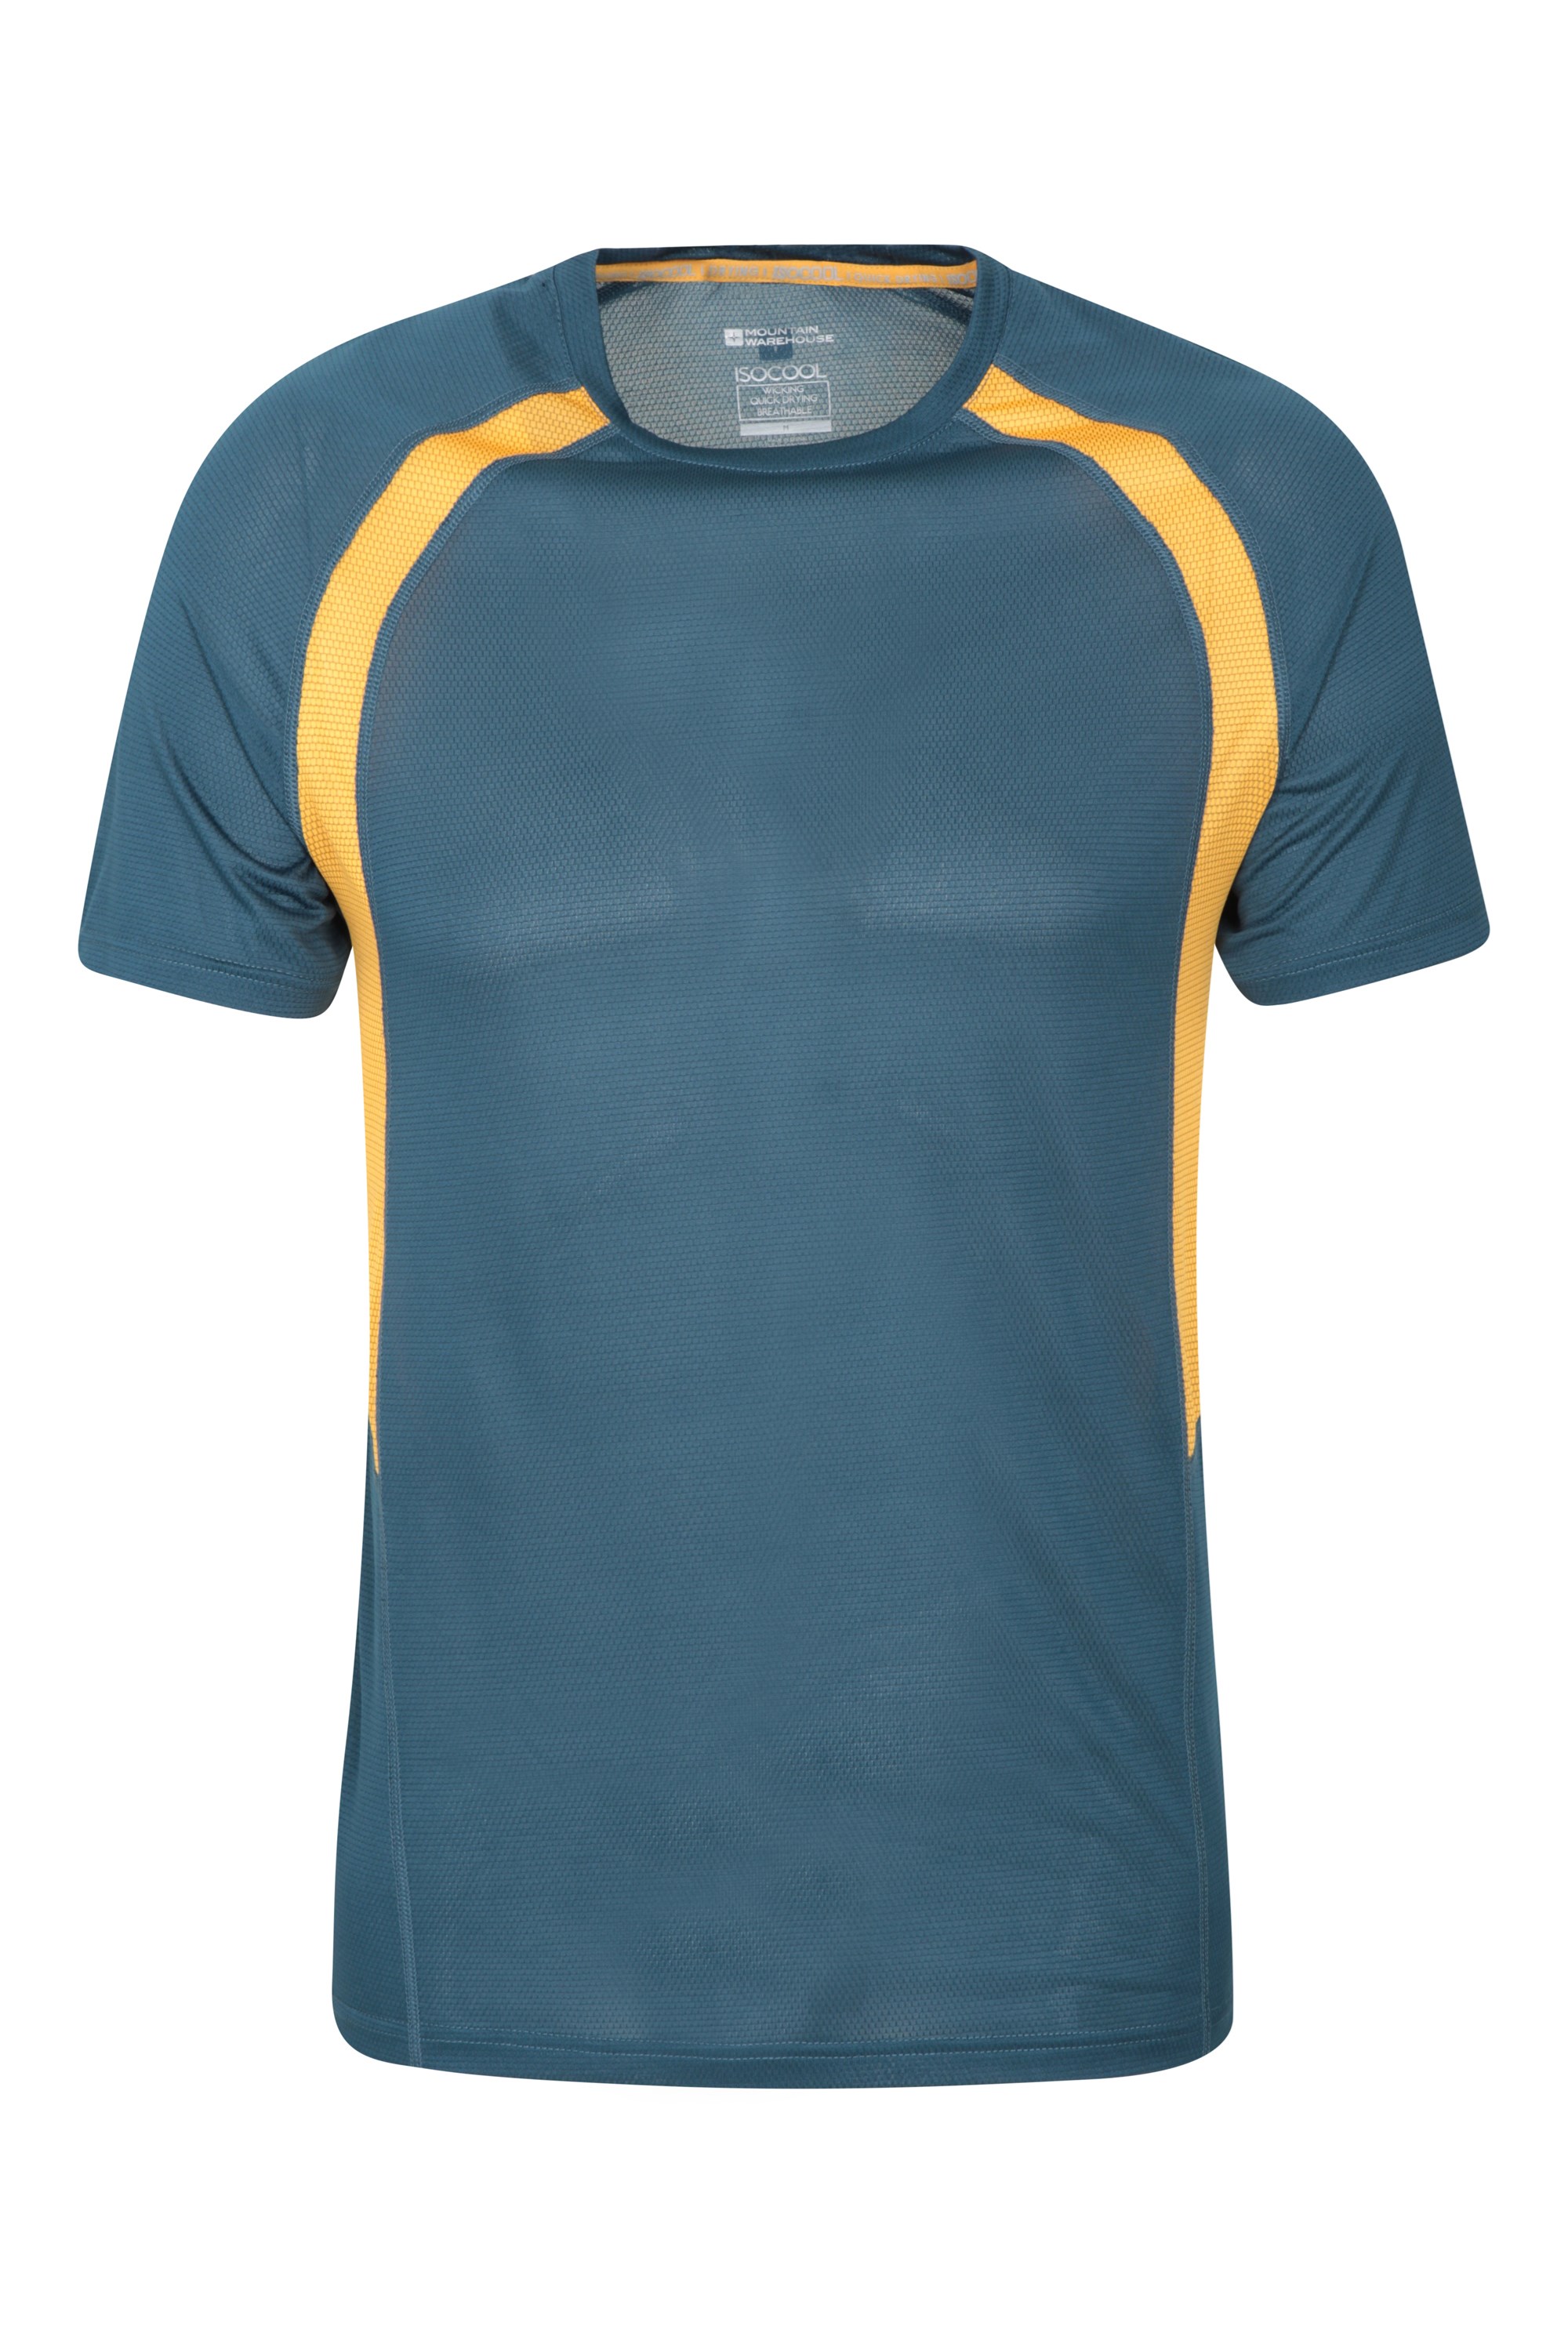 Gimnasio Ligero Mountain Warehouse T-Shirt para Hombre Bryers IsoCool Exterior Ideal para Ciclismo Top Transpirable de fácil Cuidado Camiseta de Secado rápido 